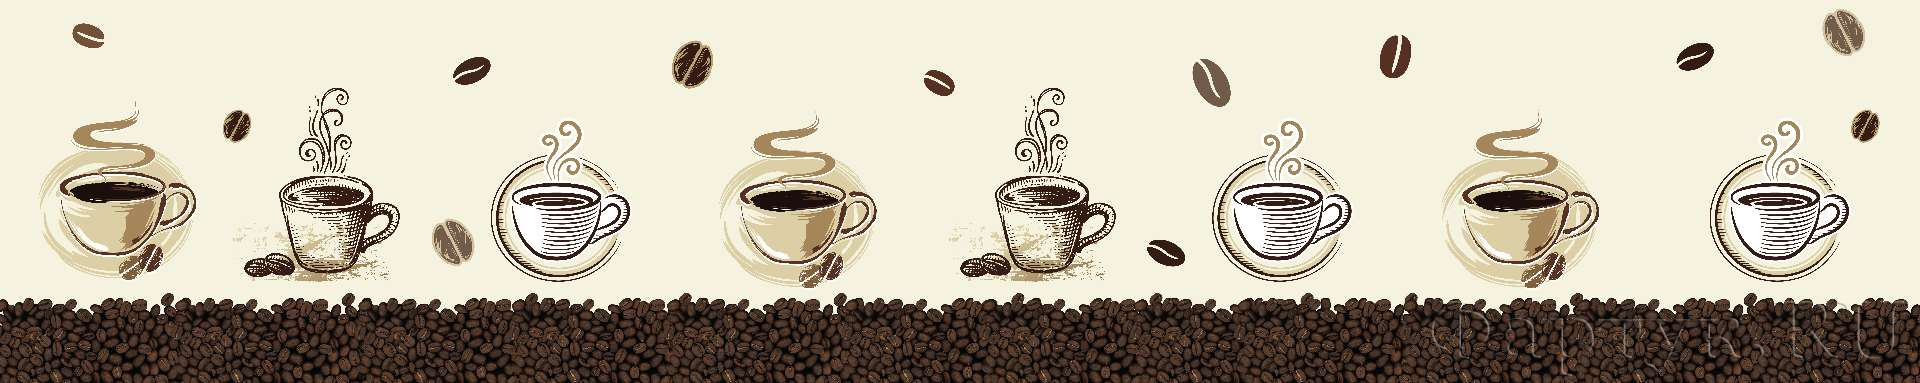 Кофе, зерна и чашки